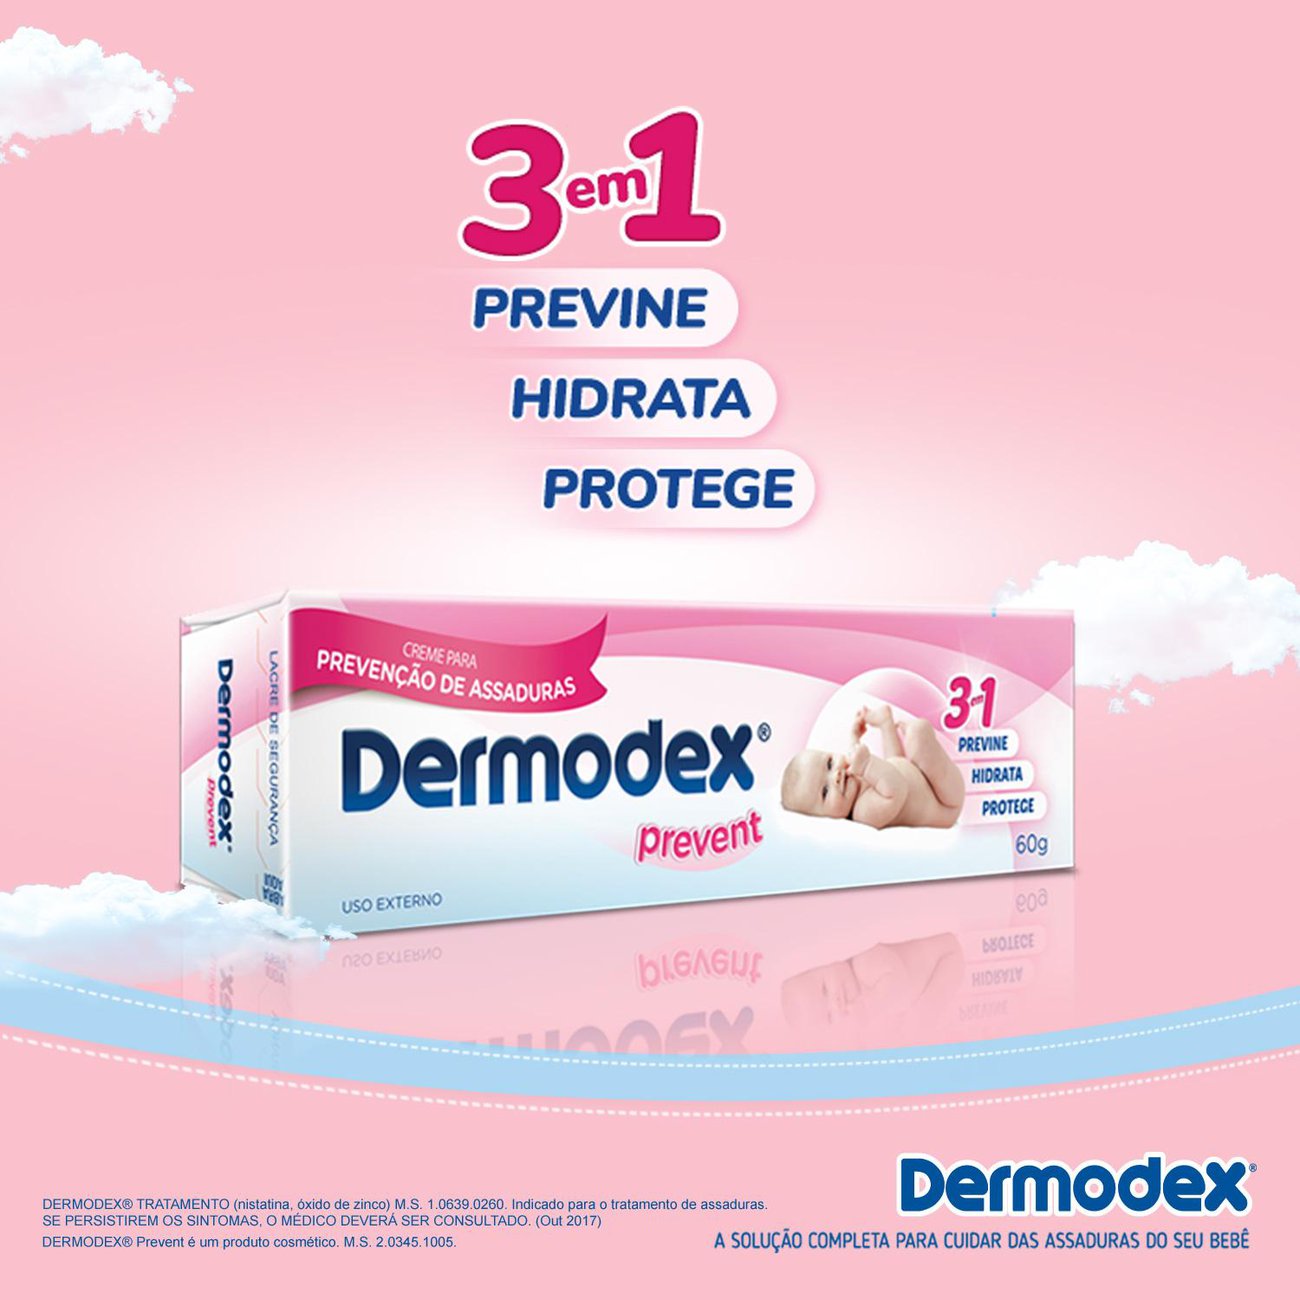 Pomada para Preveno de Assaduras Dermodex Prevent - 30g - 20% OFF